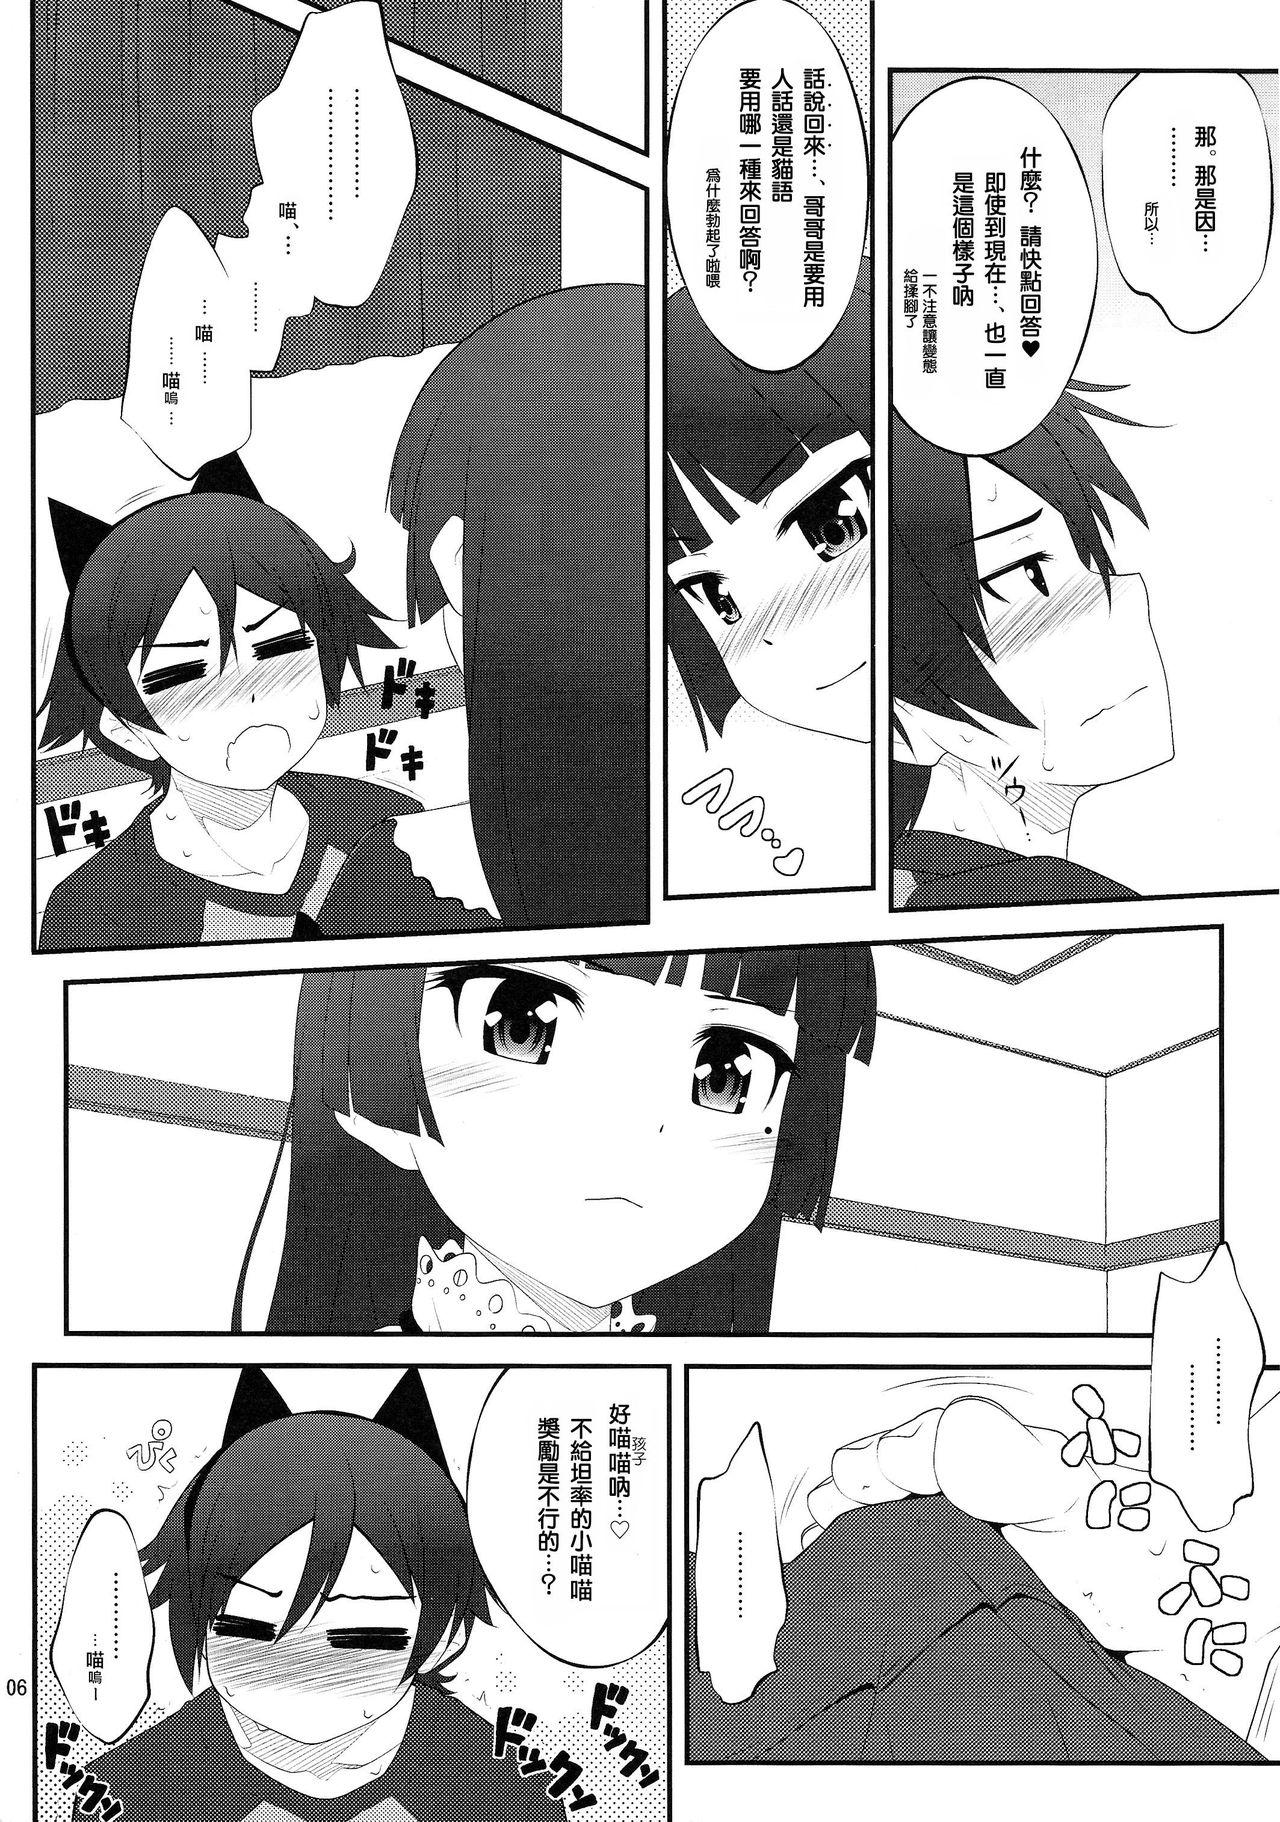 4some Nii-san, Ashi Monde Choudai After - Ore no imouto ga konna ni kawaii wake ga nai Gay Shorthair - Page 6